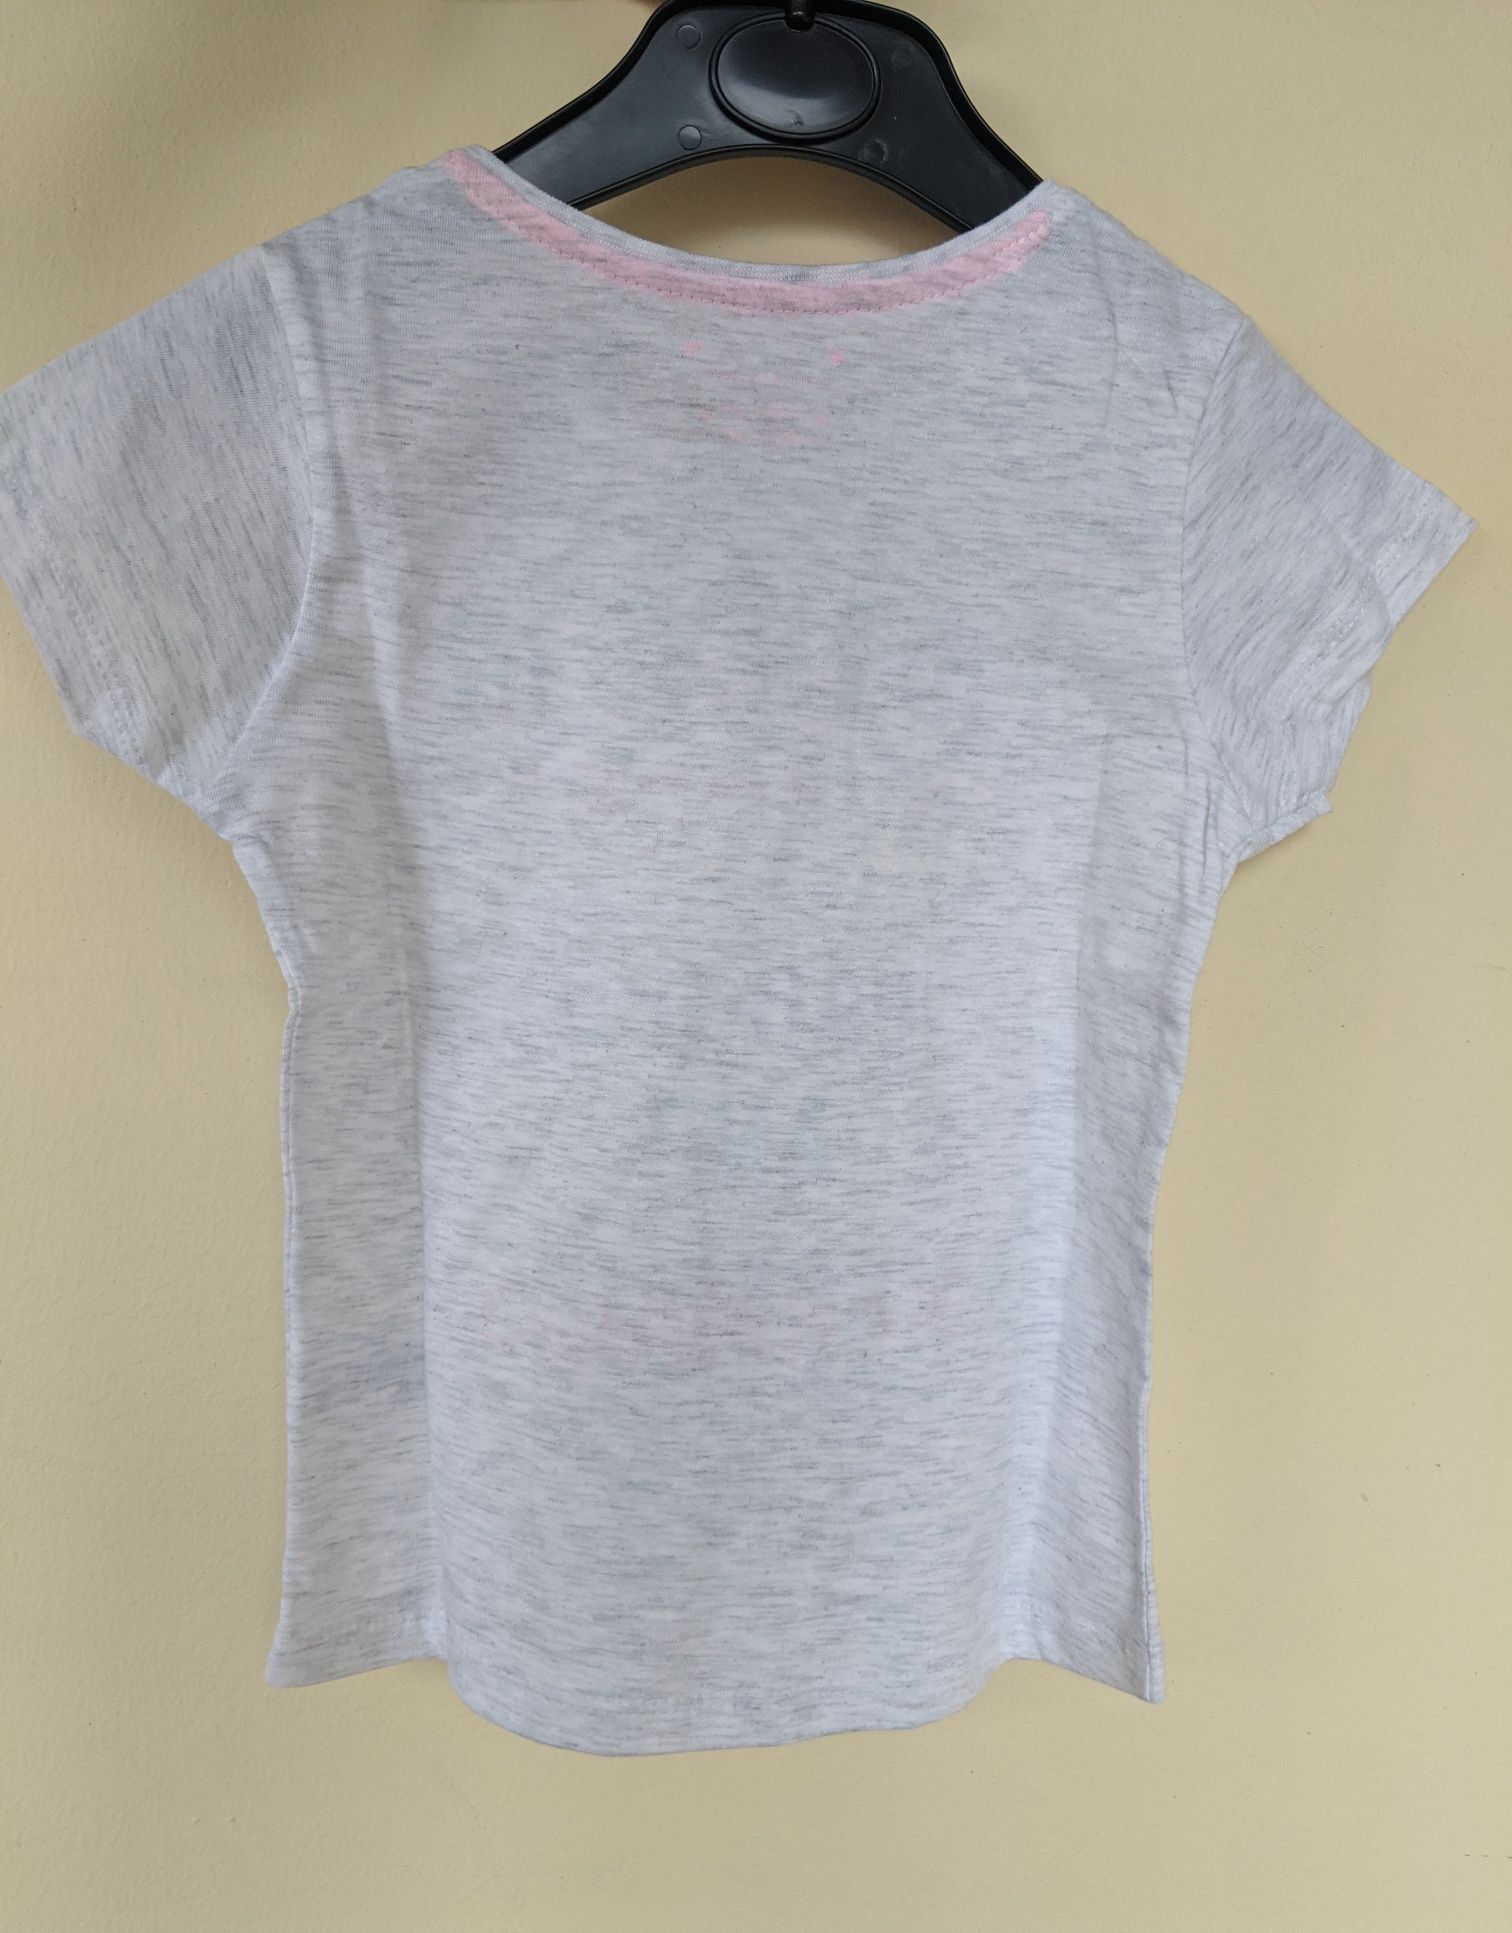 Primark футболка на девочку 5-6 лет, рост 116 см, Англия